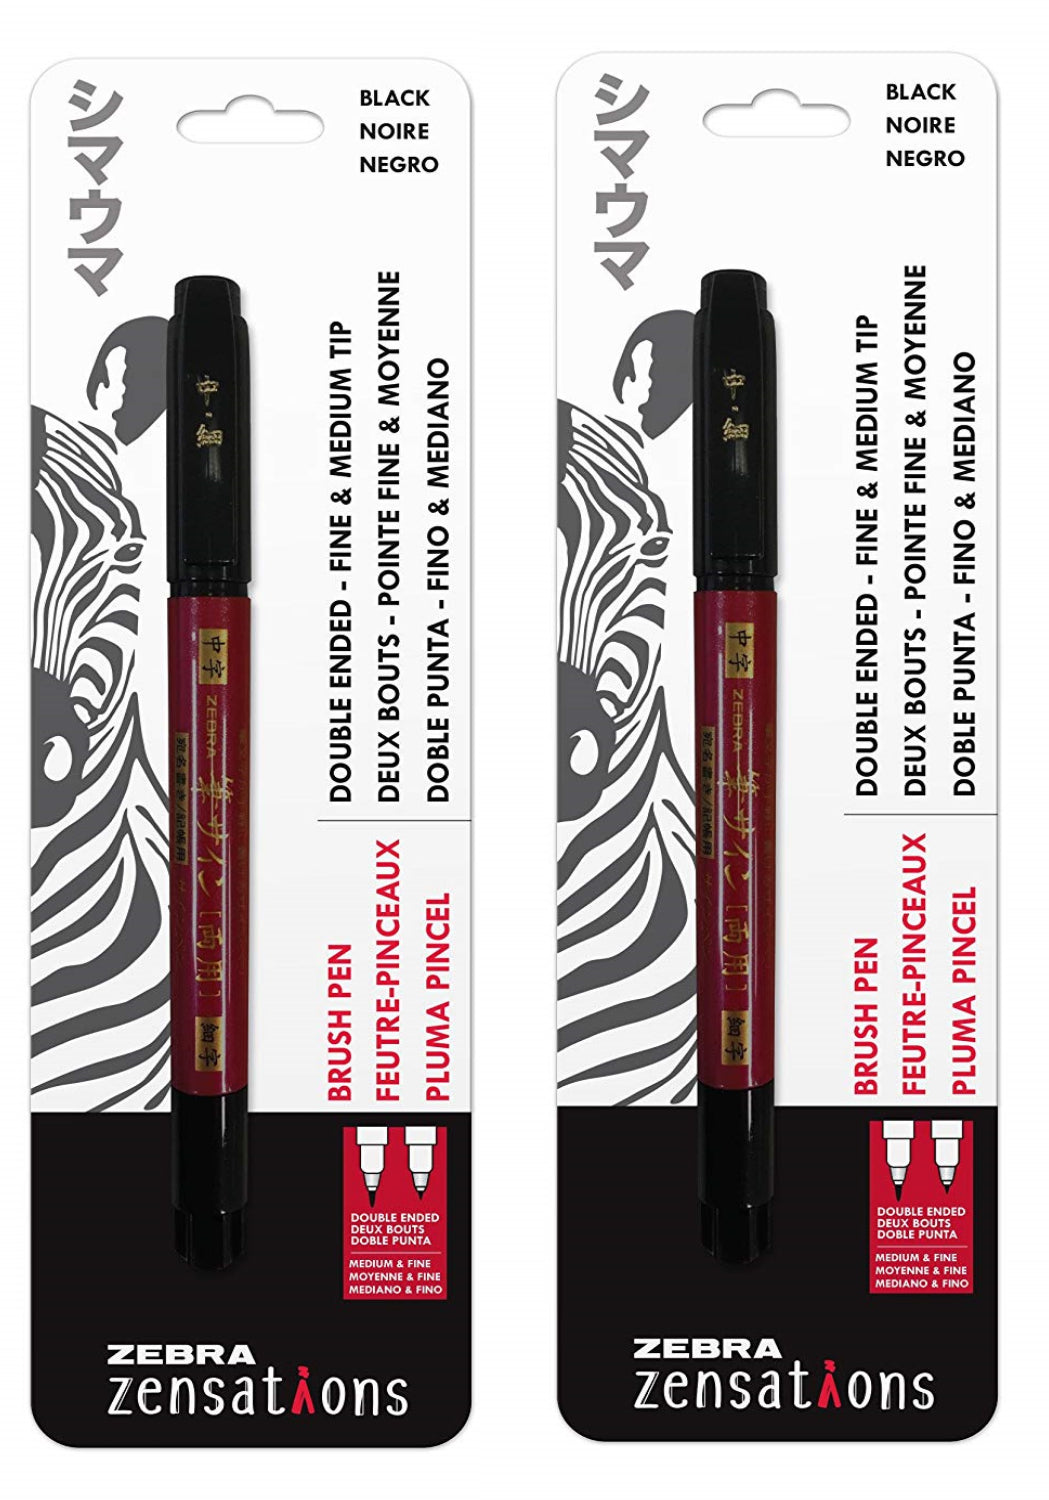 Zensations Brush Pen, Double Ended, Medium and Fine Brush Tip, Black Water-Resistant Ink - Zebra Pen